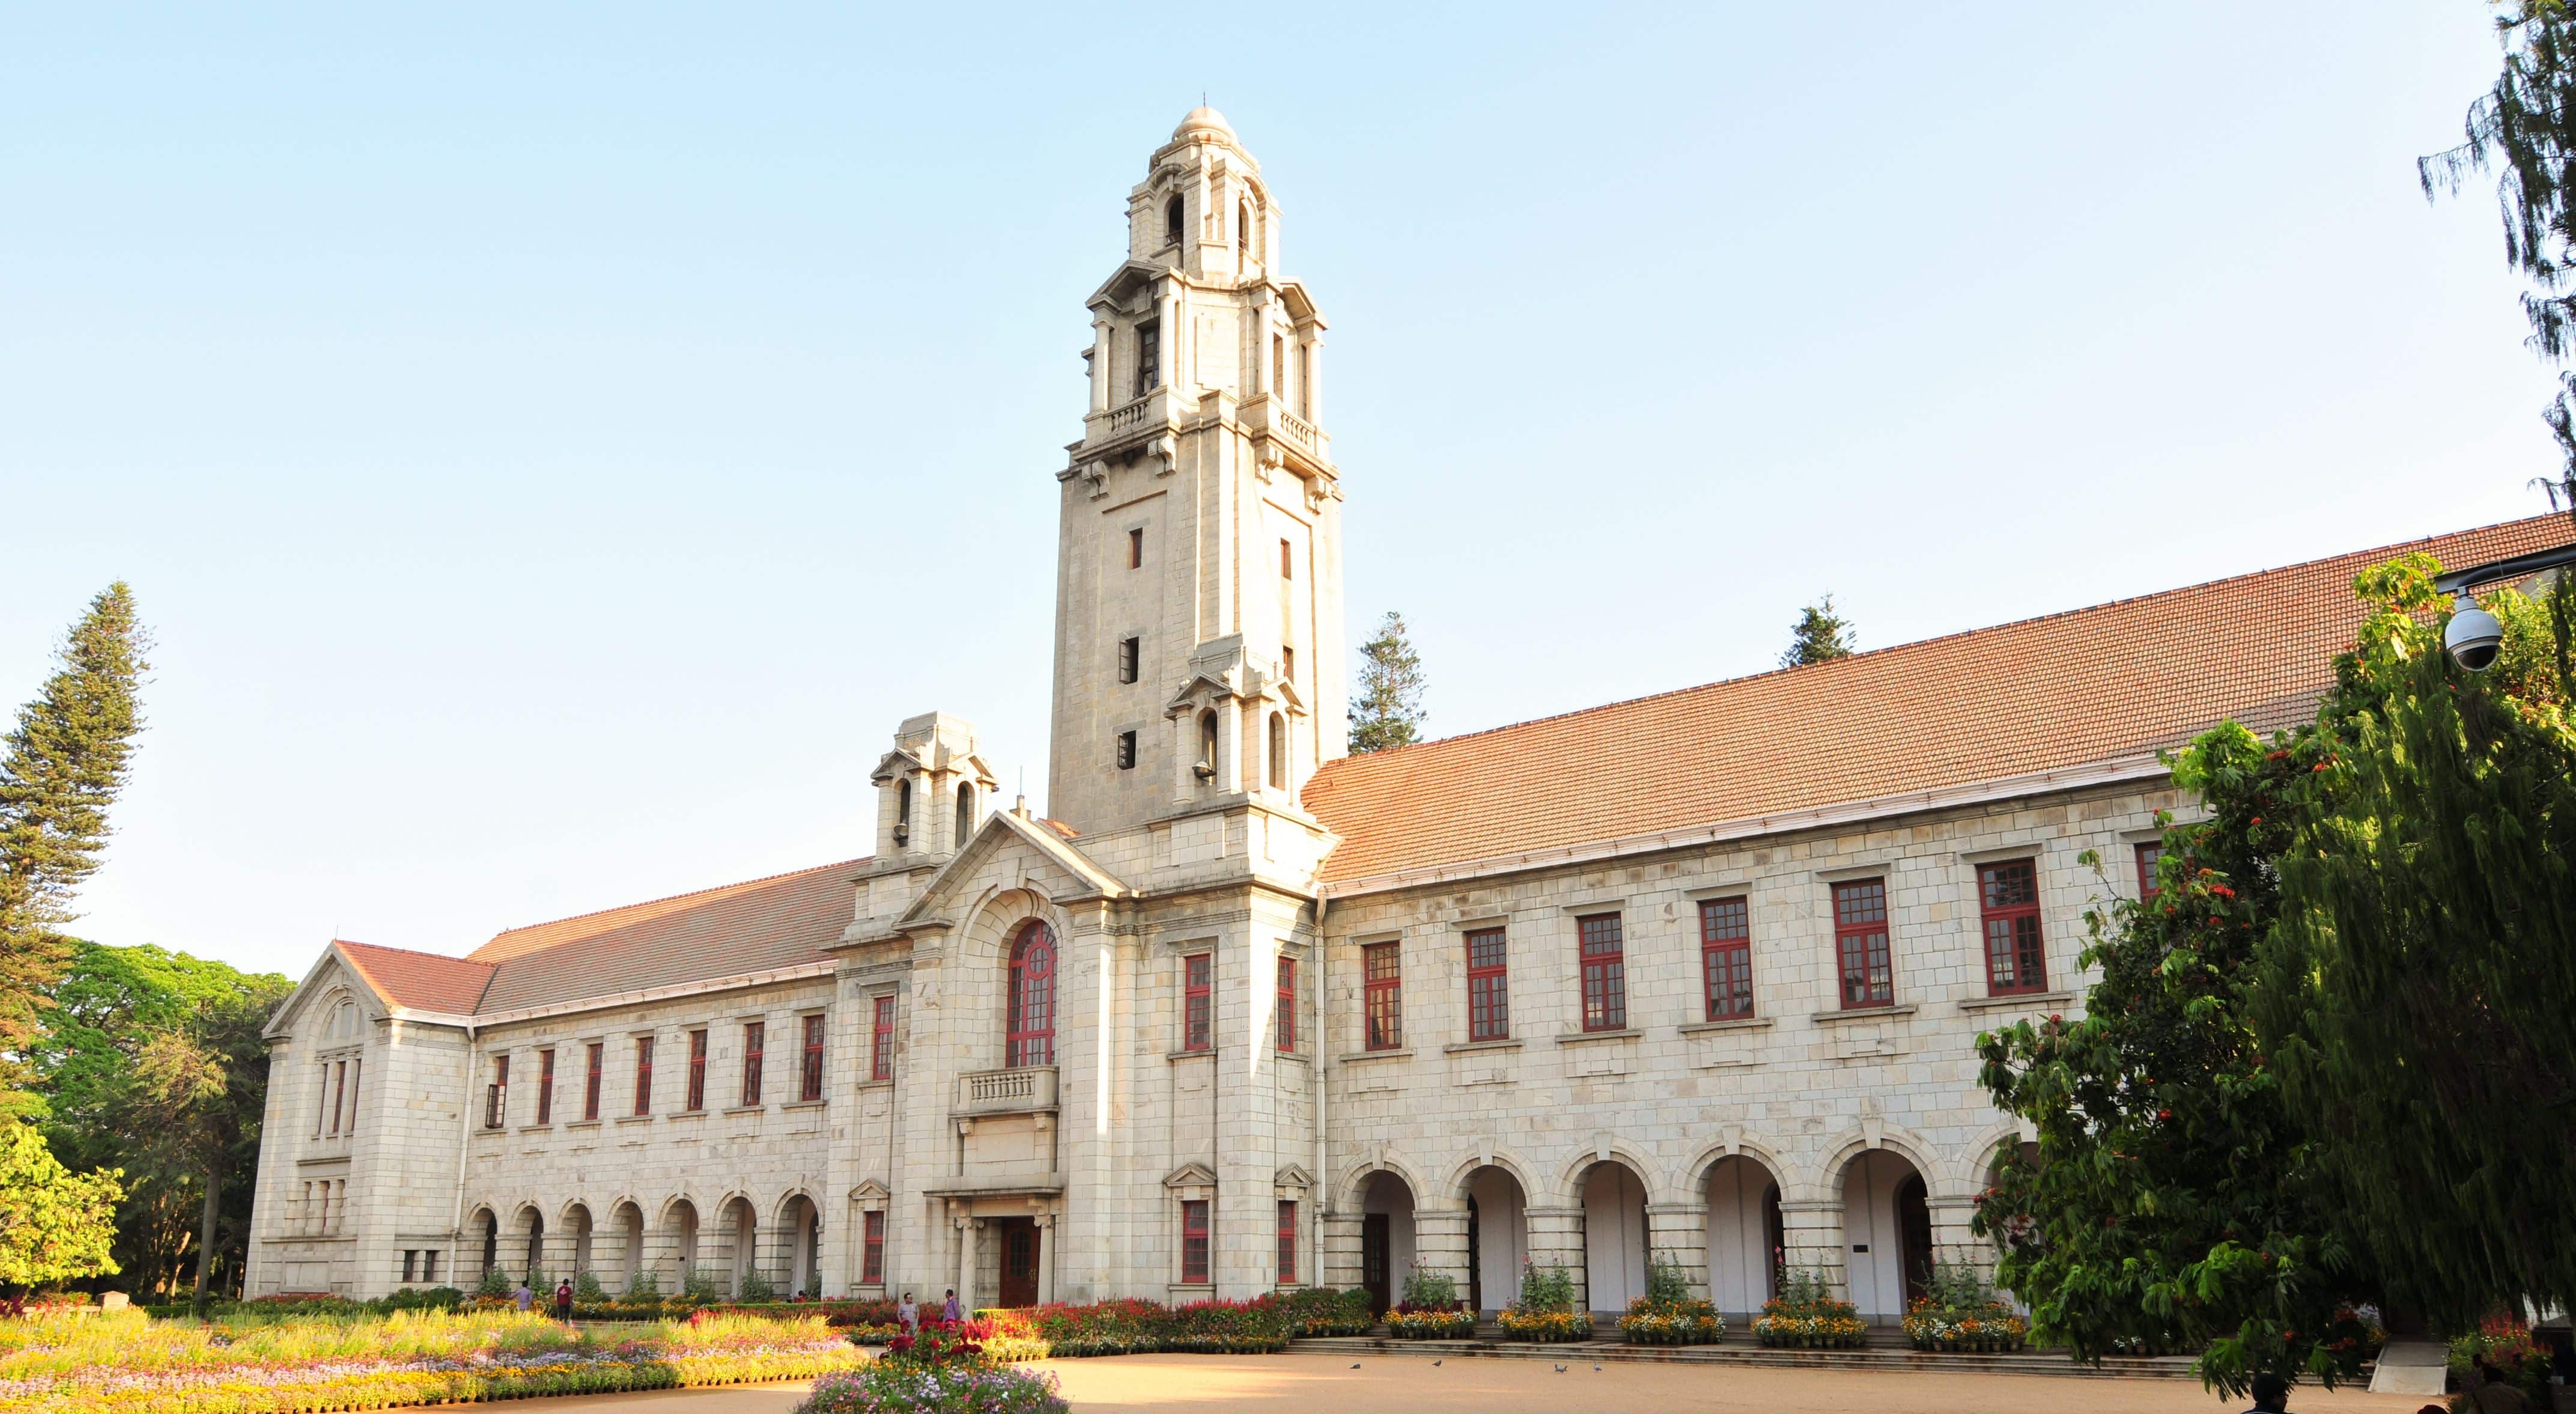 iisc-and-iit-mumbai-the-only-two-indian-universities-on-global-top-list-zee-business